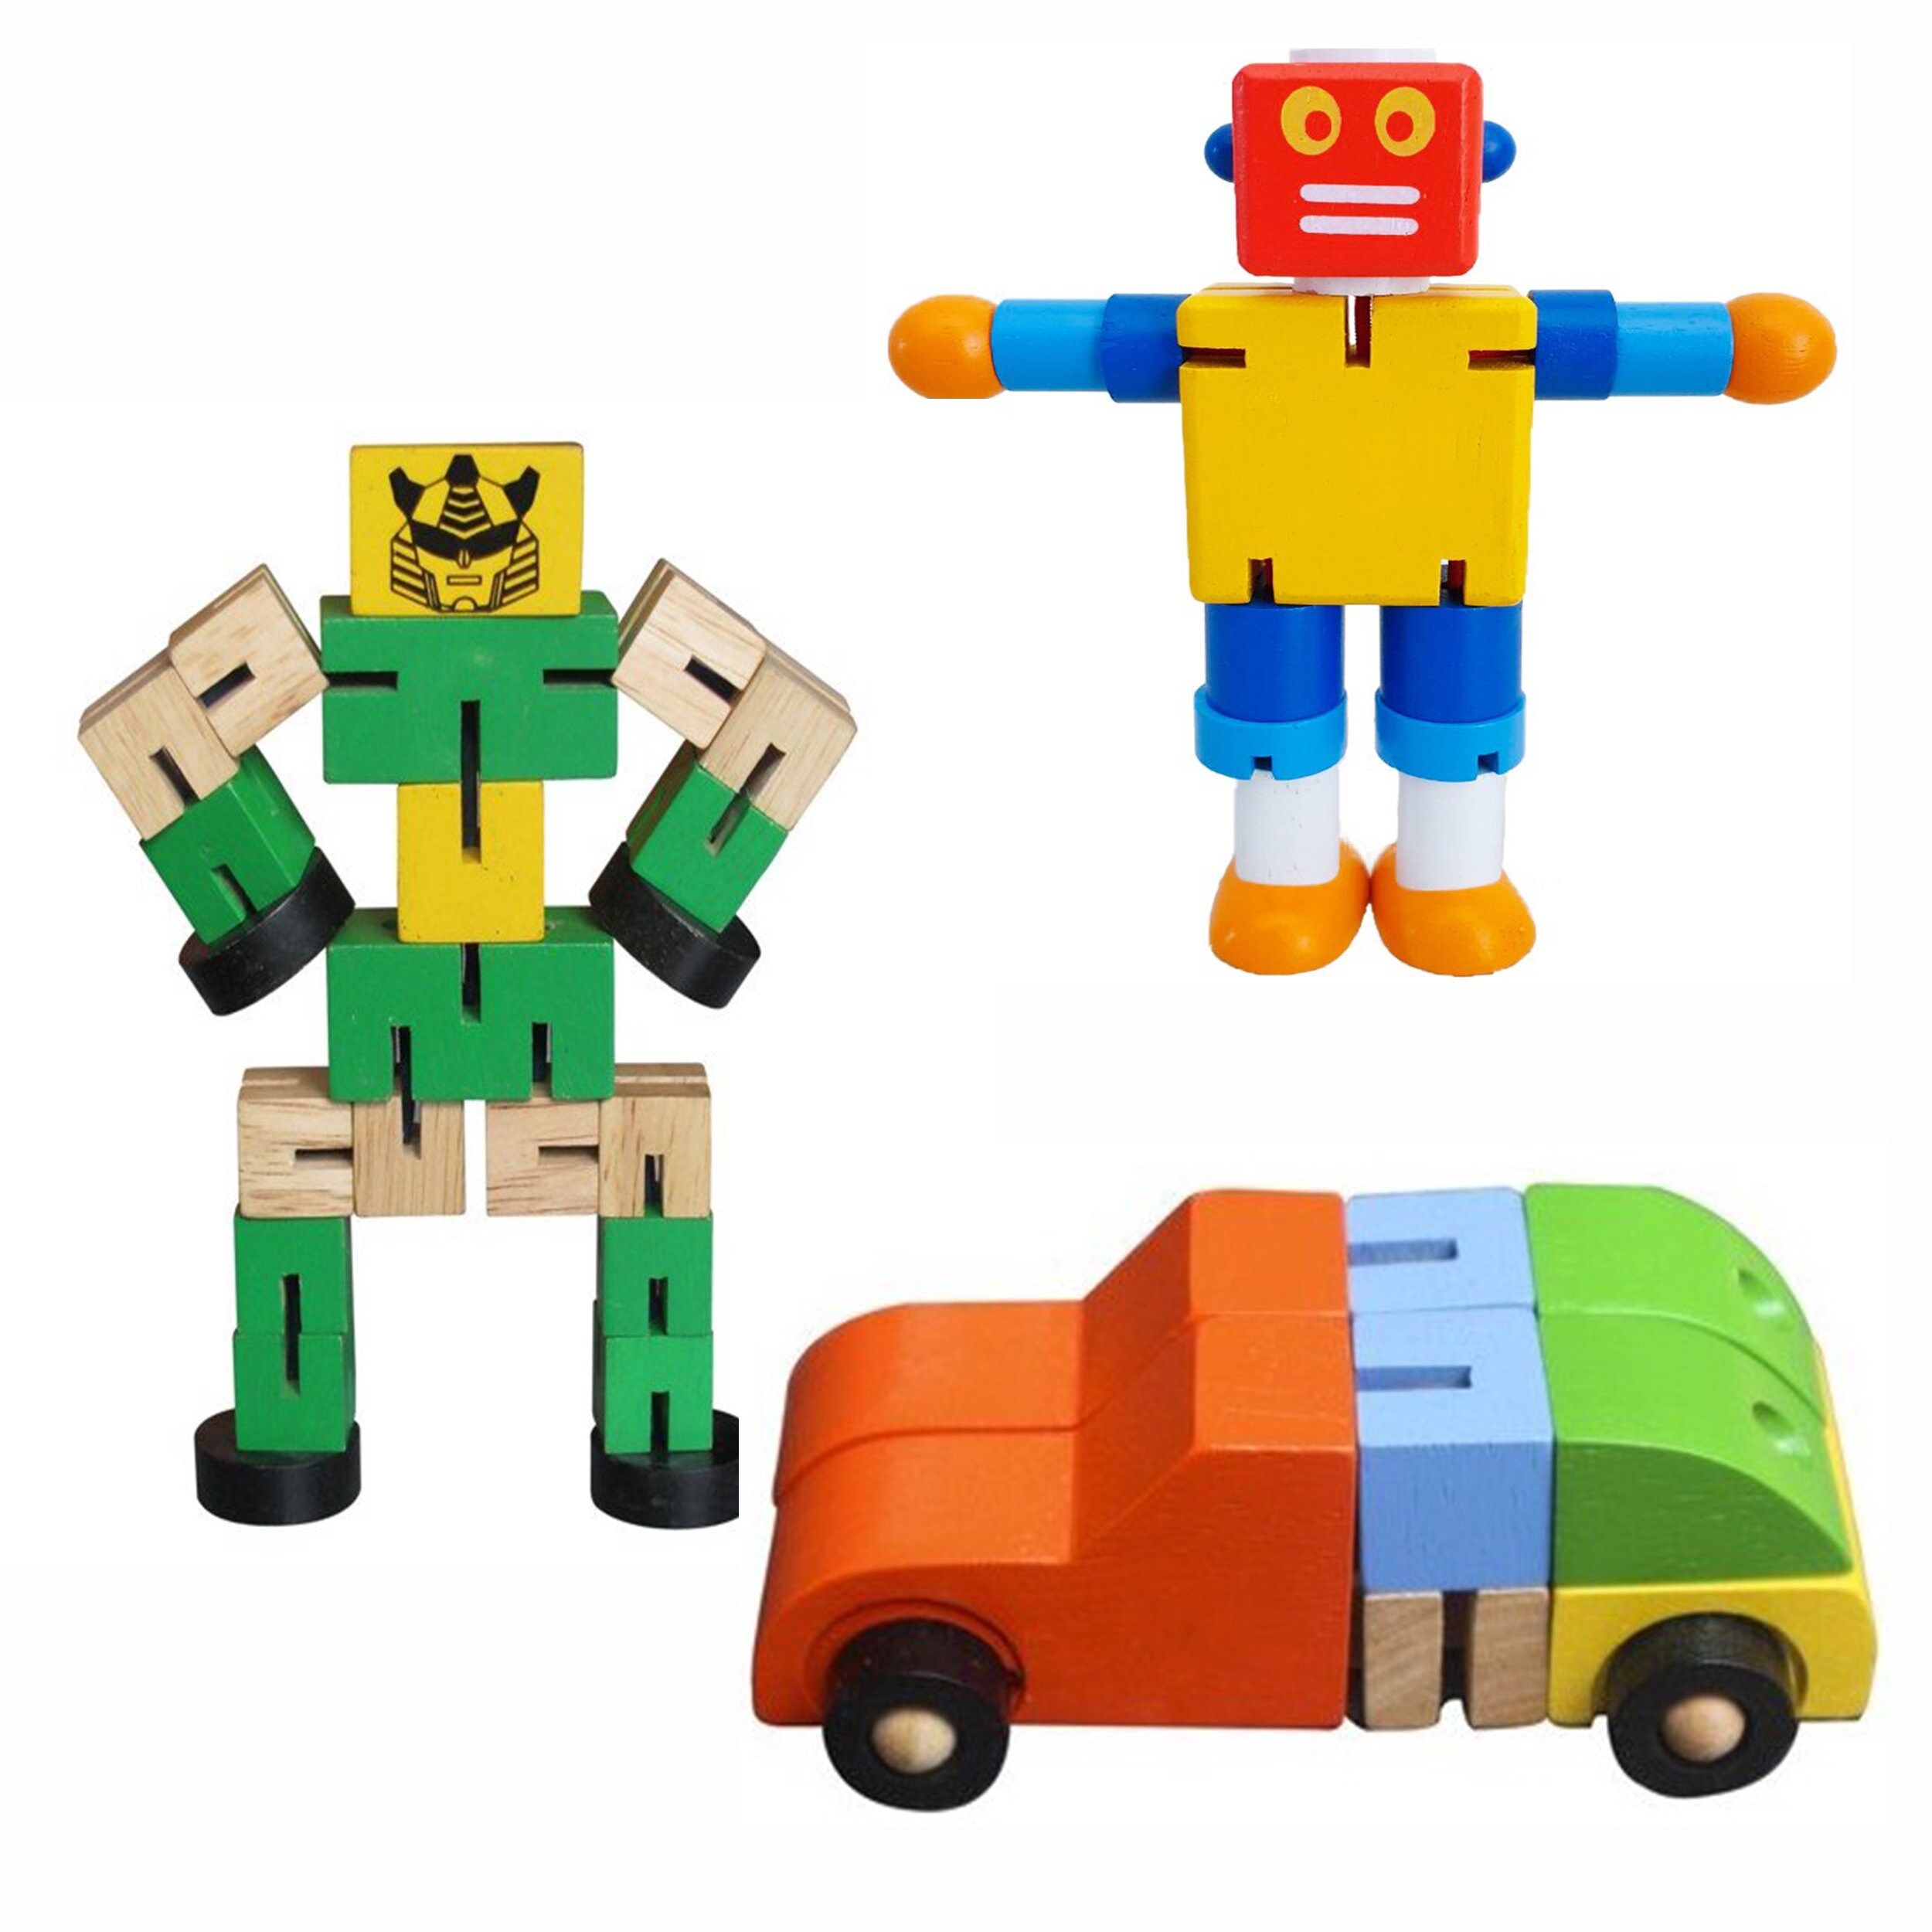 Jouet de modèle de voiture robot de transformation automatique à une clé  pour enfants, plastique, figurines d'action amusantes, véhicules de  déformation, enfants, garçons